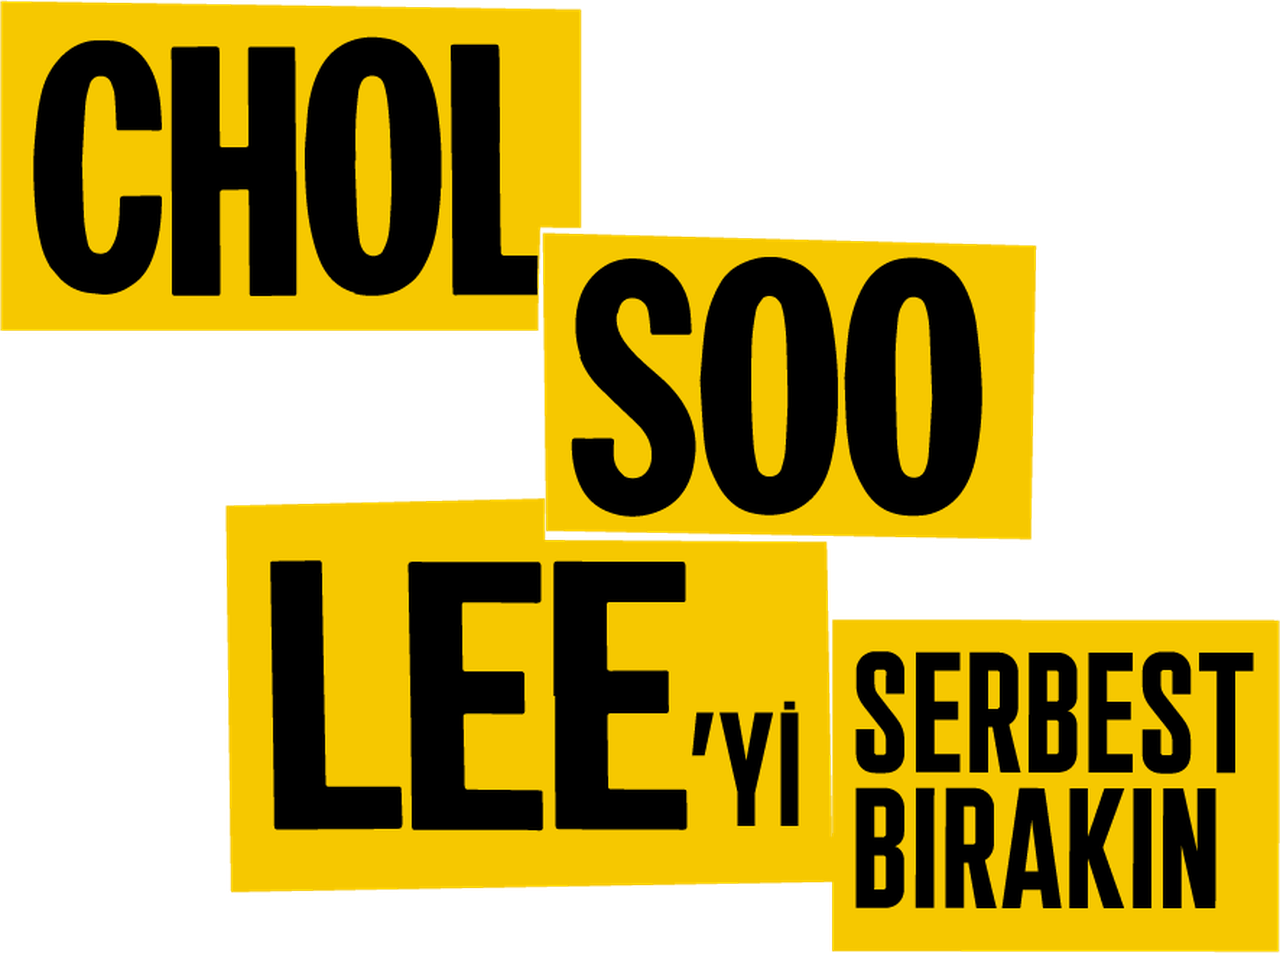 Chol Soo Lee'yi Serbest Bırakın